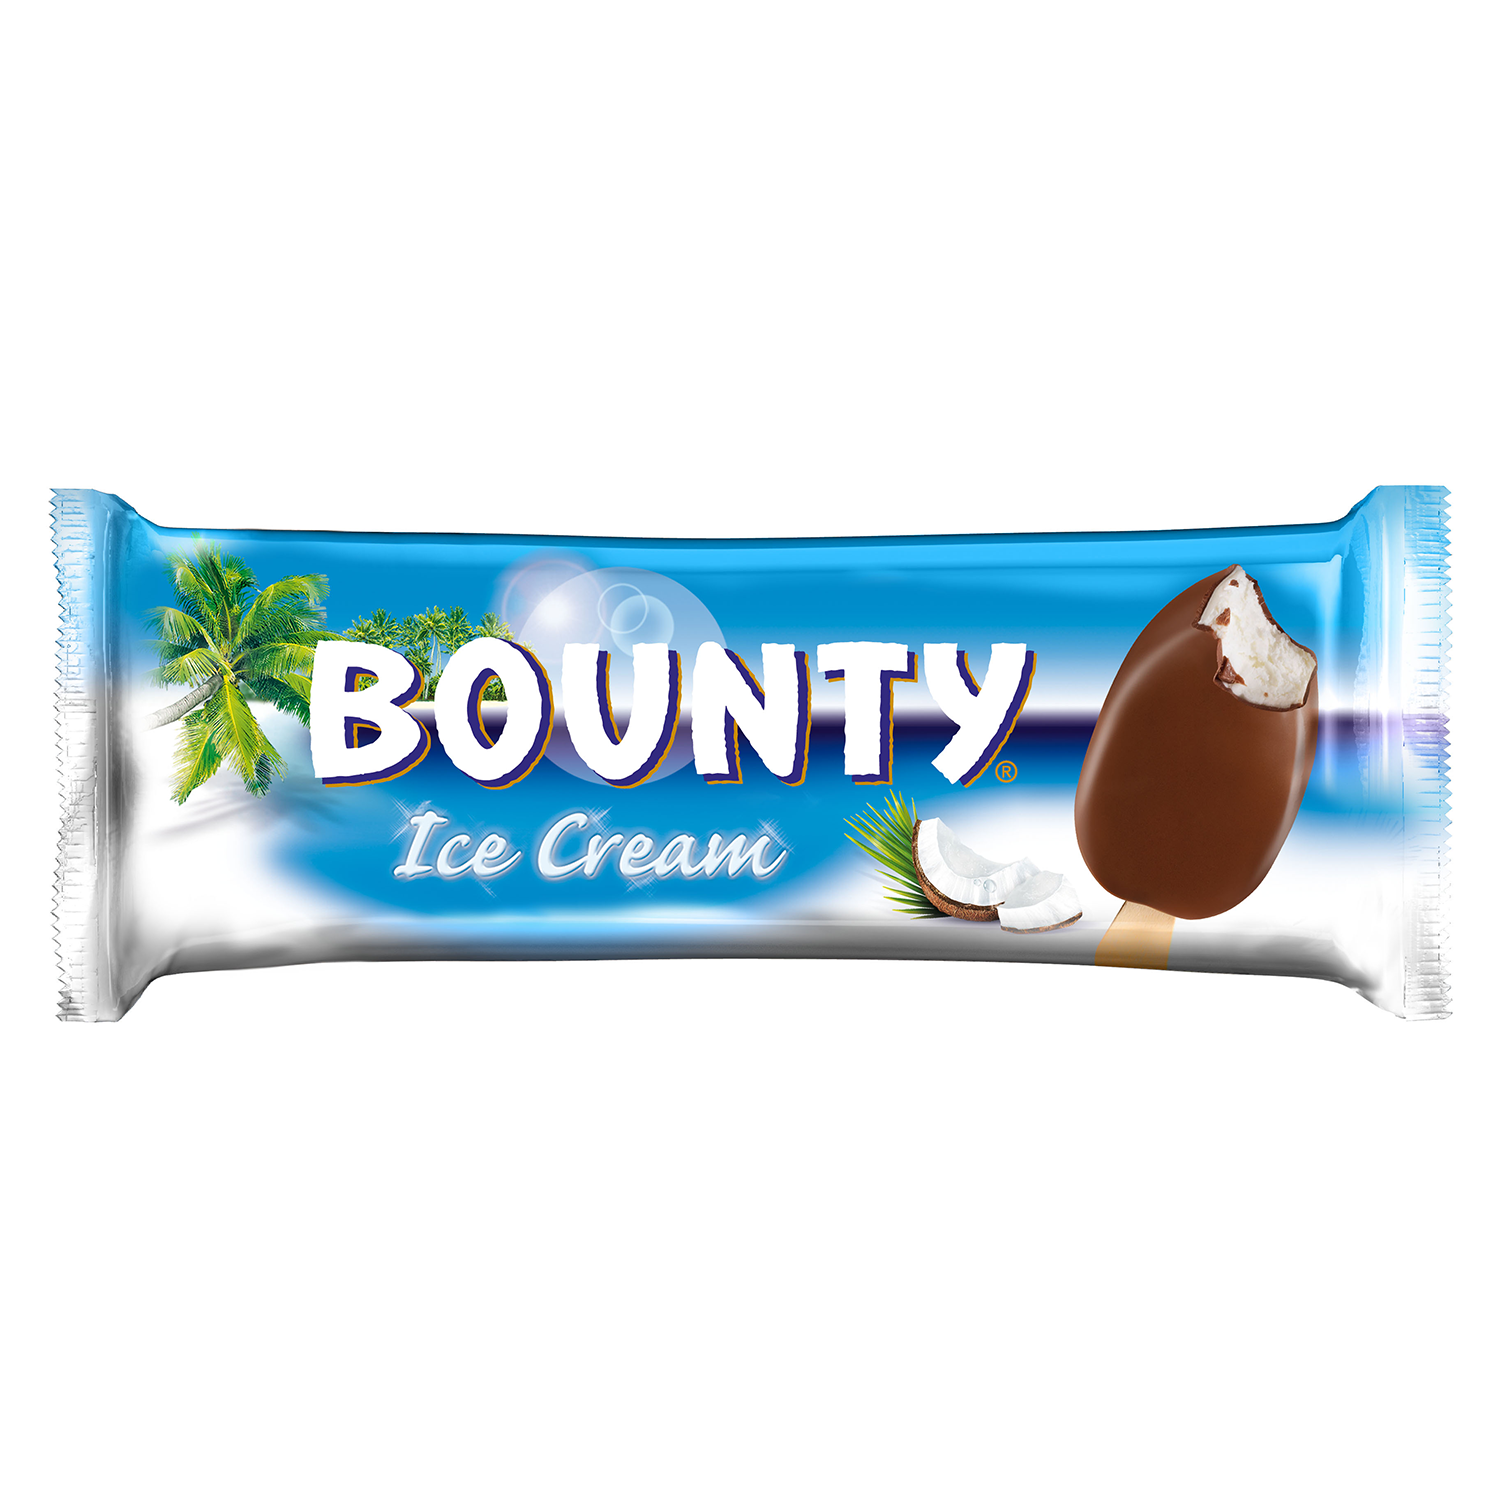 Bounty-Ice-Cream.png